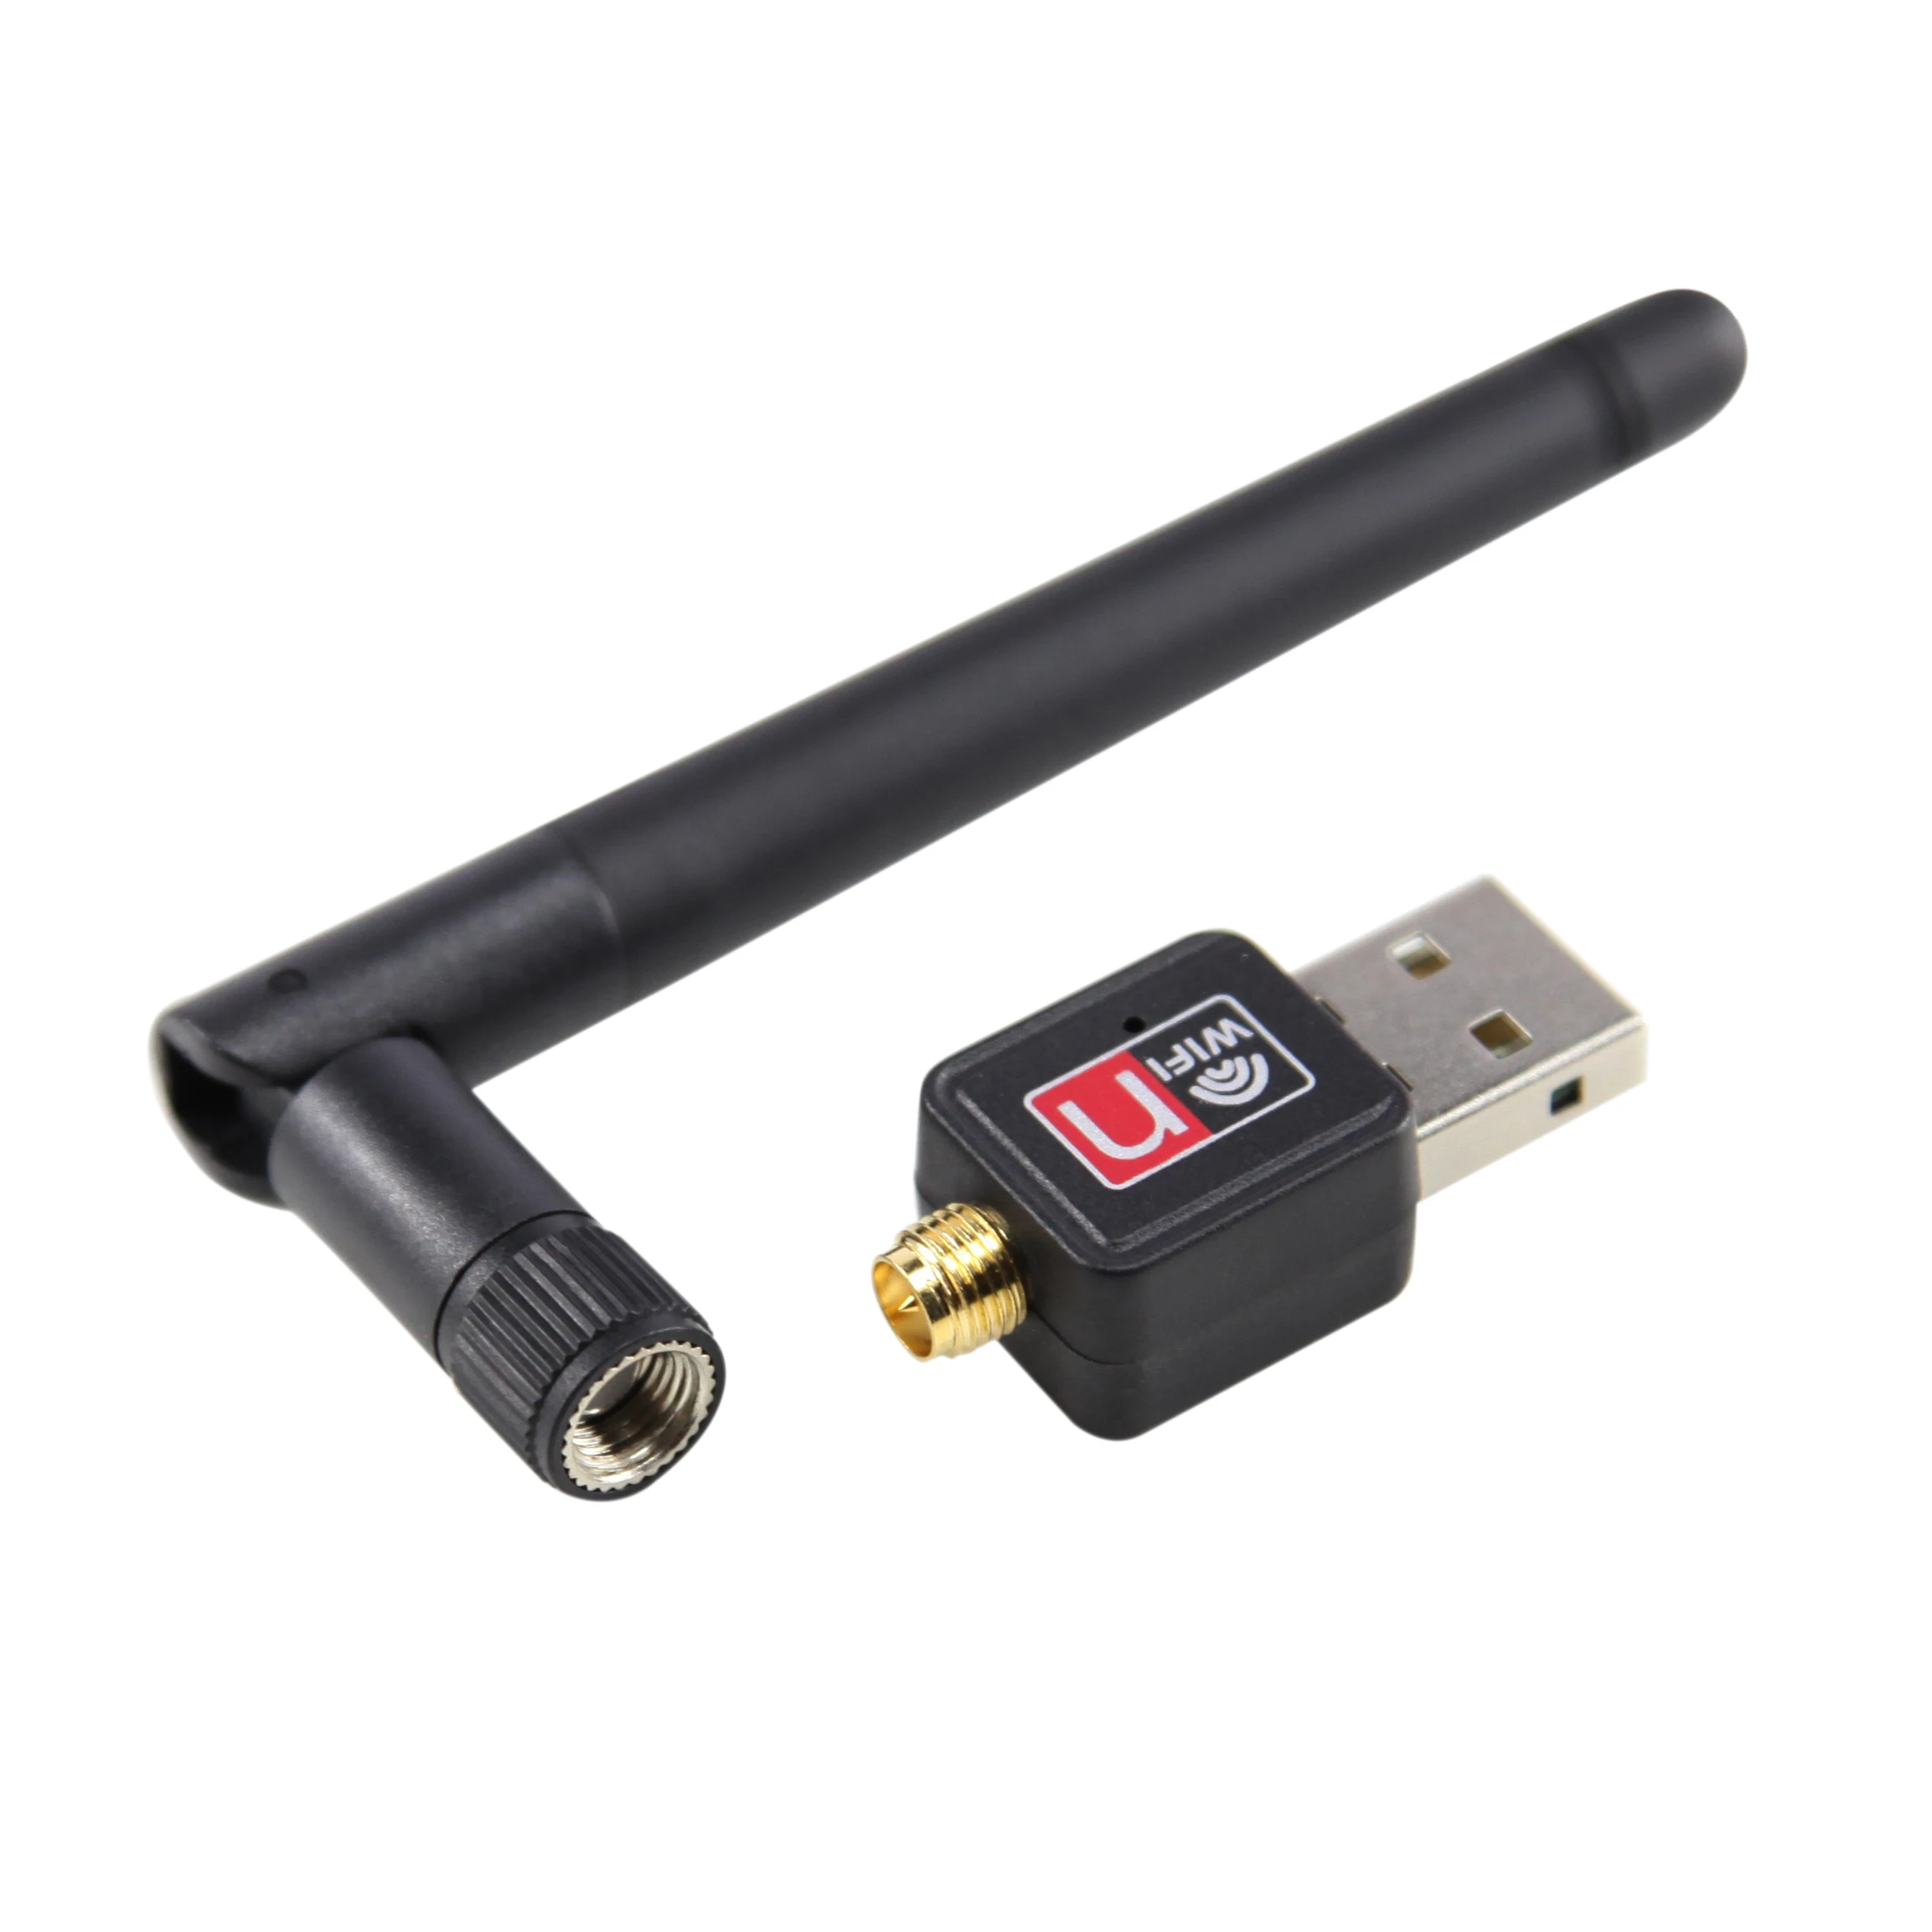 USB Wi-Fi адаптер с антенной, 150 Мбит/с, 2,4 ГГц wi fi адаптер с антенной usb 3 0 1200 мбит с